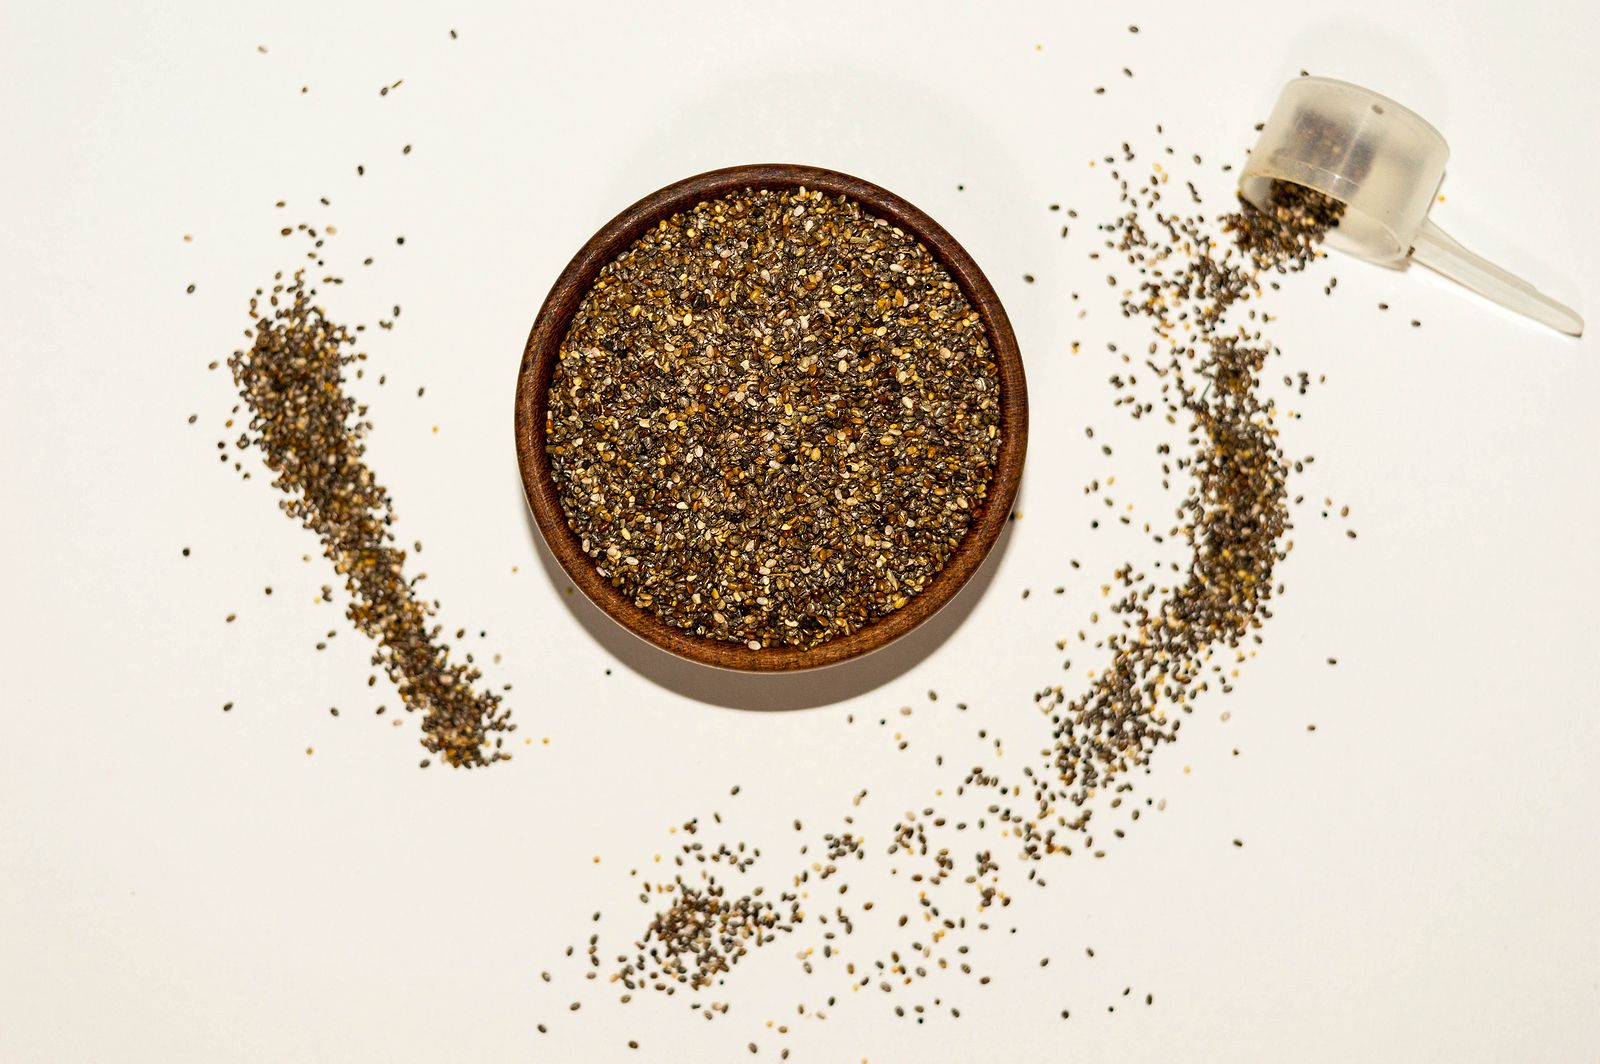 Las semillas de chía, el 'superalimento' que reduce el colesterol (BigStock)